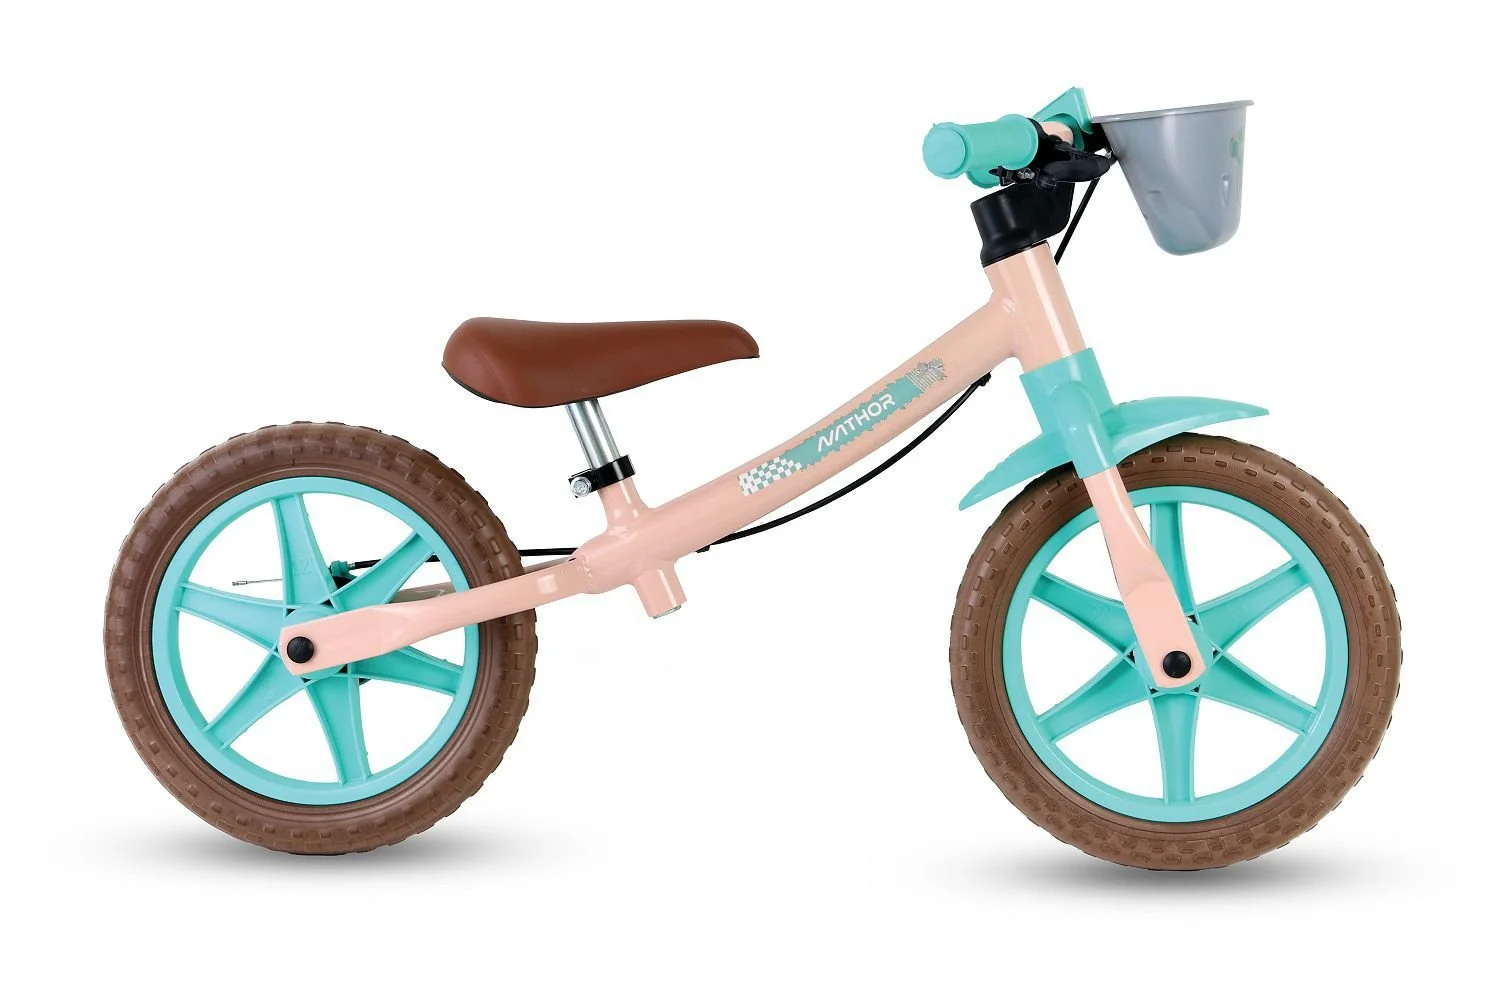 Descubra a melhor bicicleta de equilíbrio para crianças - Guia completo 2023